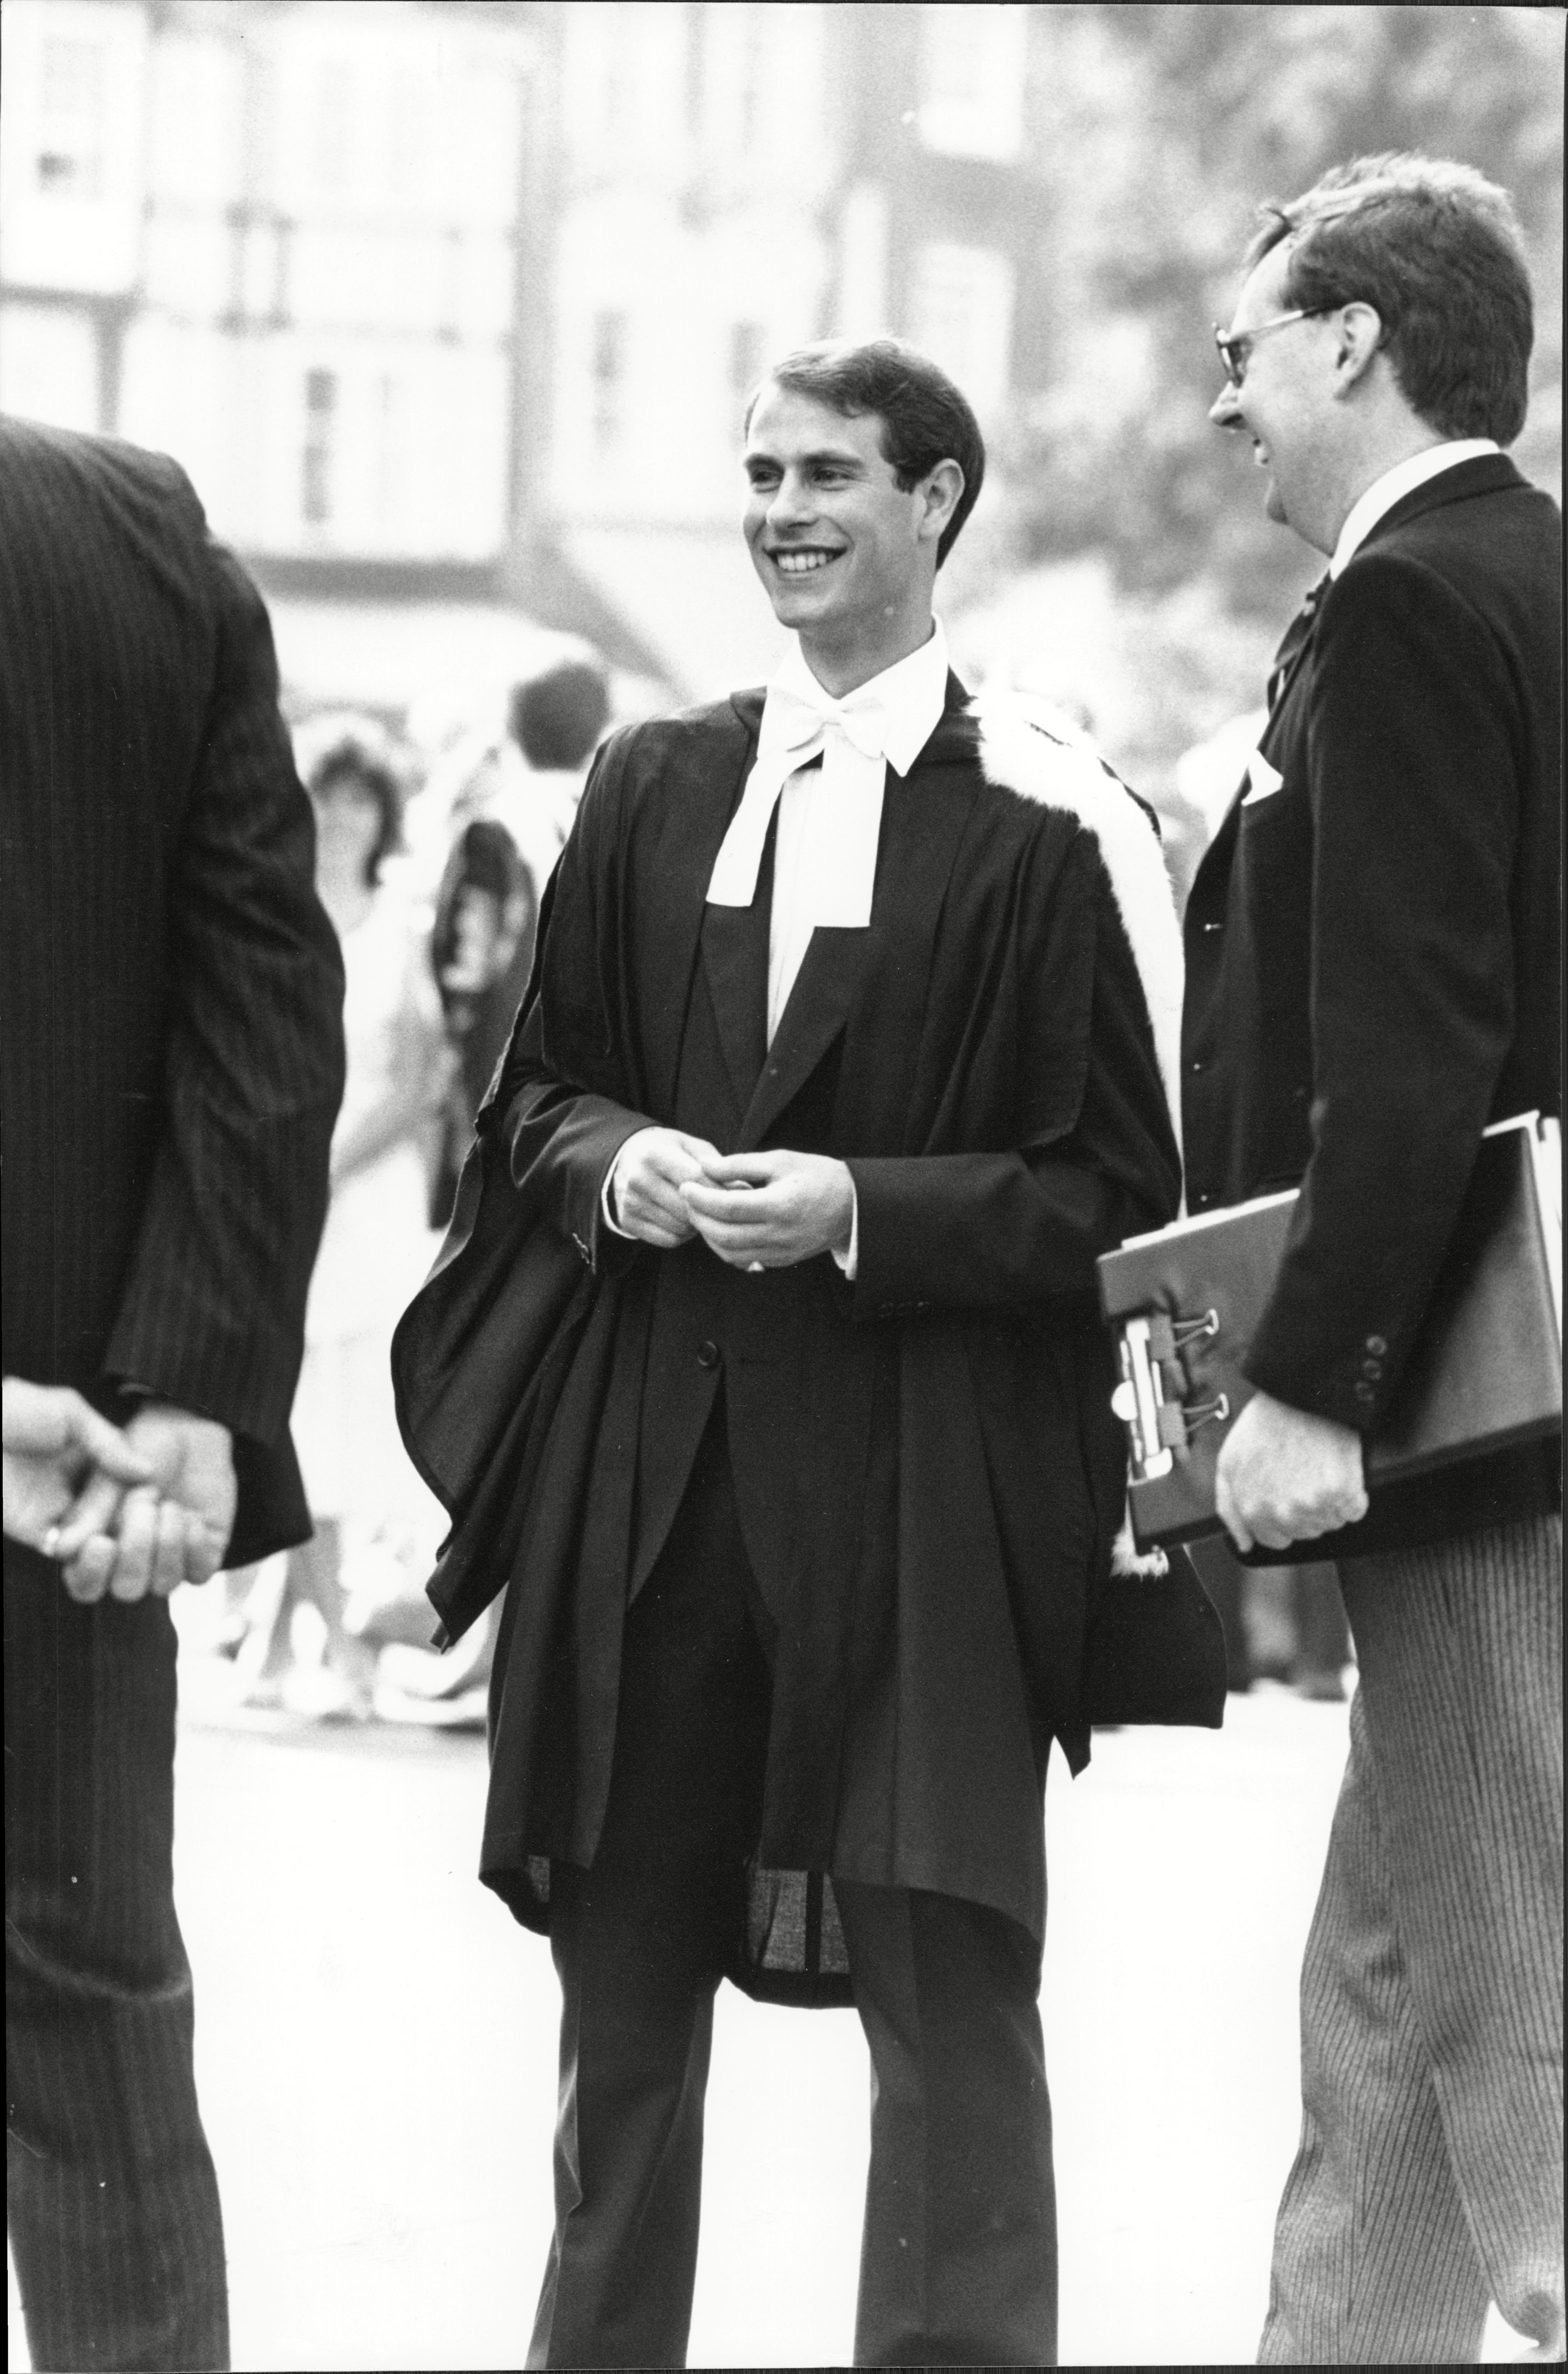 Edward est diplômé de l'université en 1986, avant de rejoindre les Royal Marines.